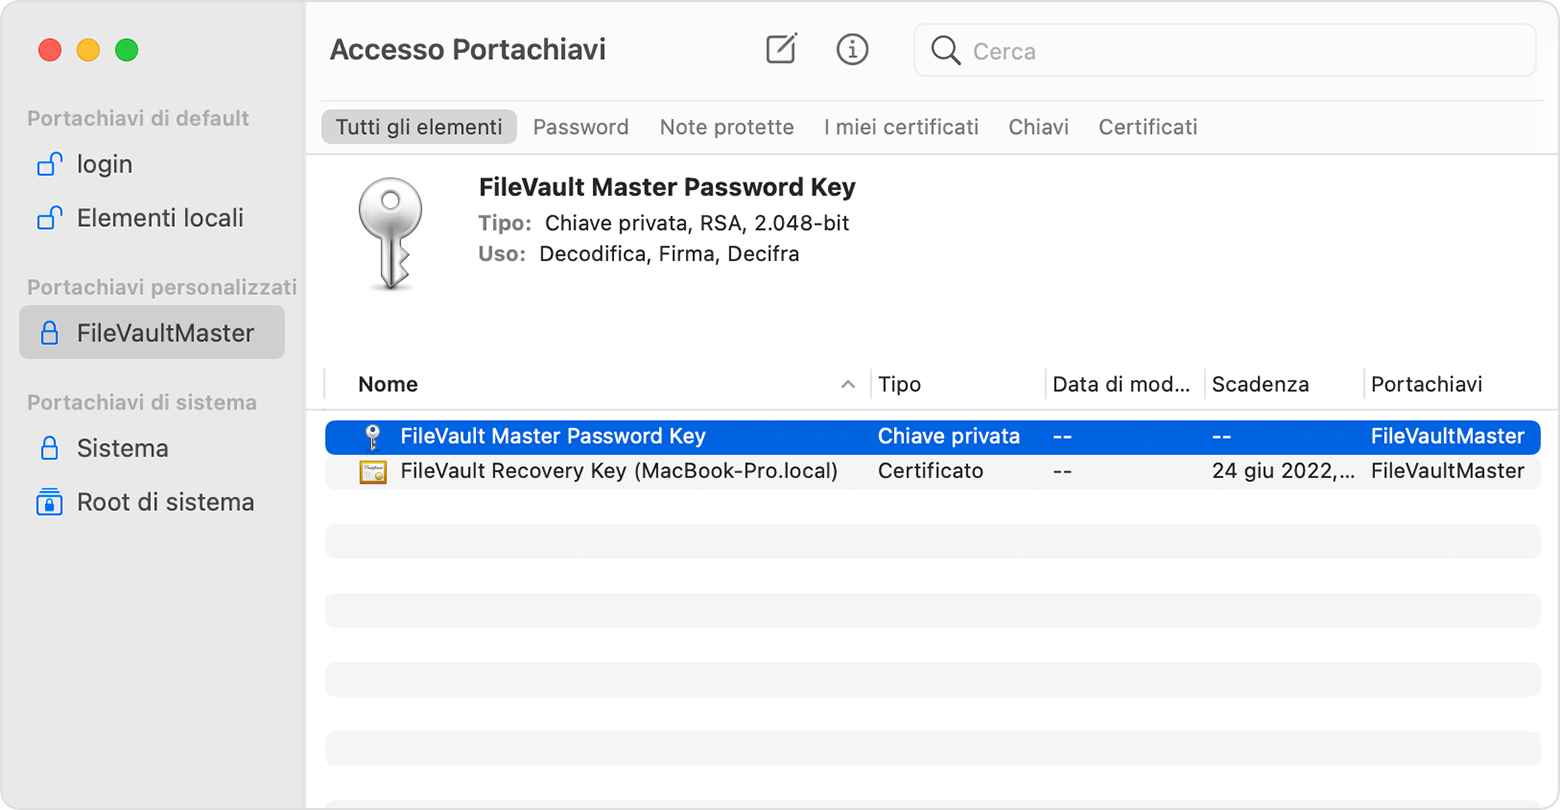 Accesso Portachiavi, con FileVault Master Password Key selezionata